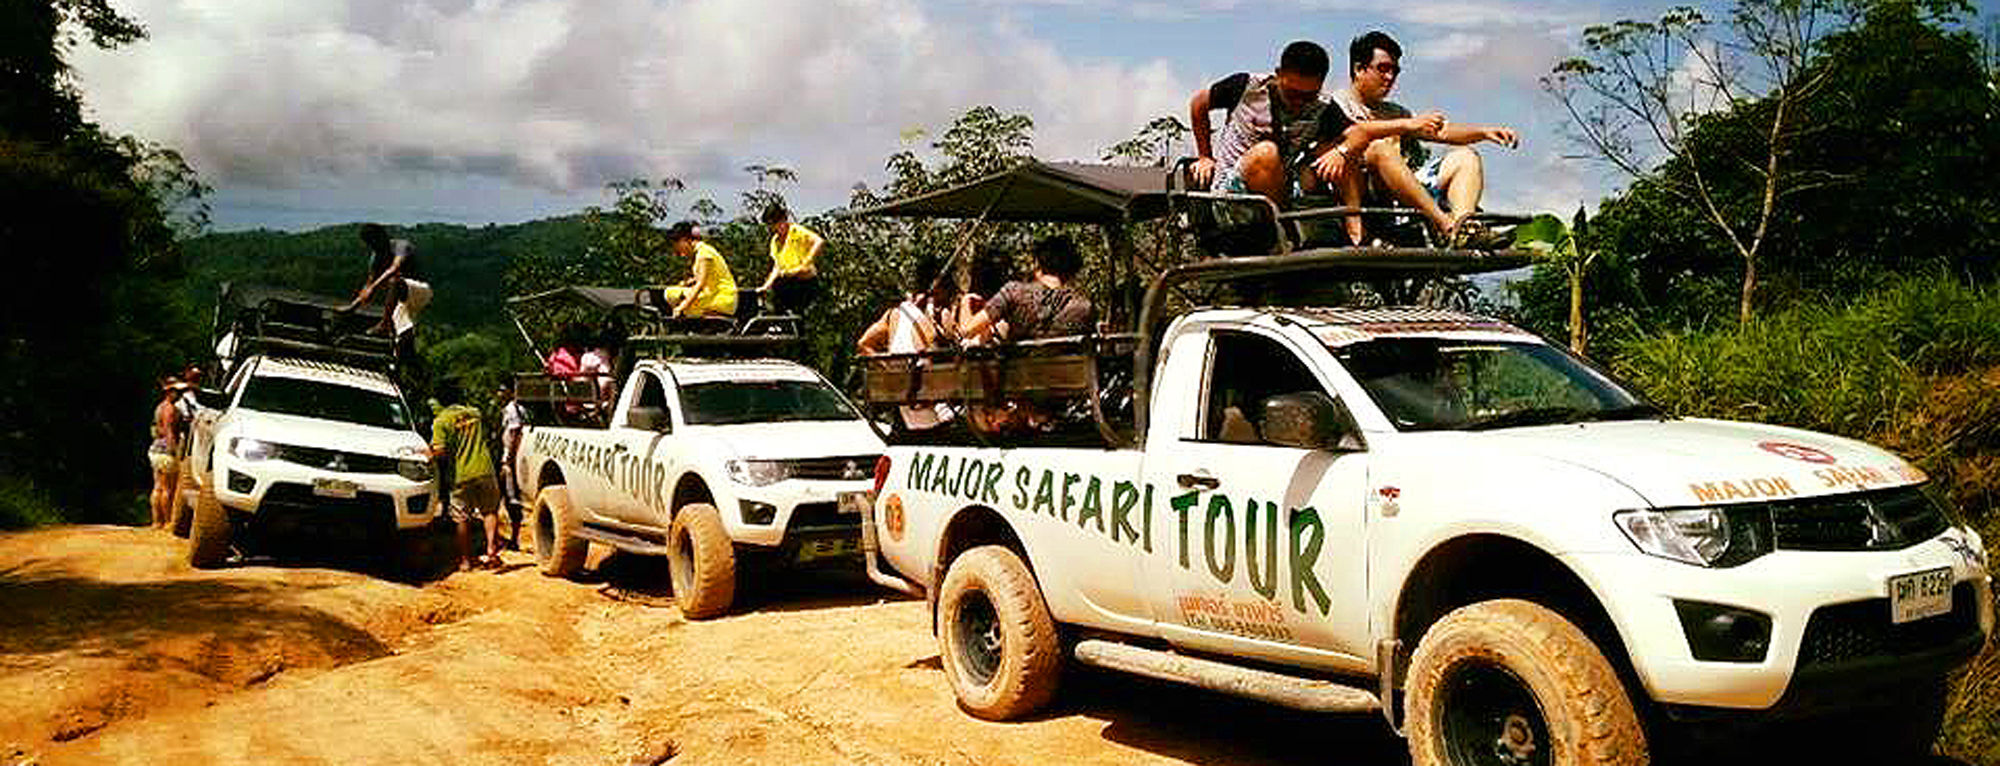 safari tour koh samui